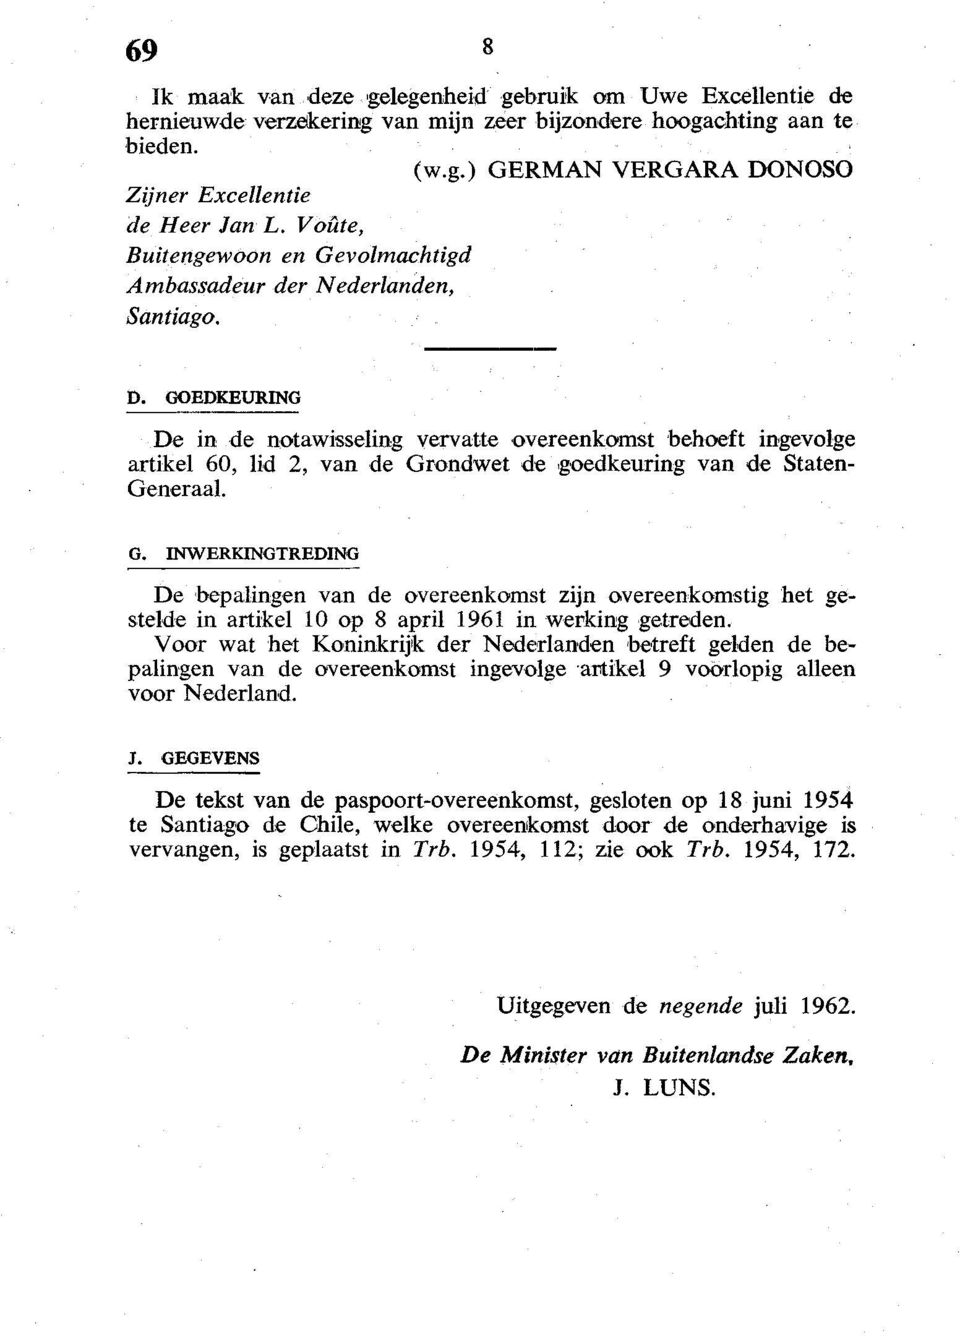 GOEDKEURING De in de notawisseling vervatte overeenkomst behoeft ingevolge artikel 60, lid 2, van de Gr